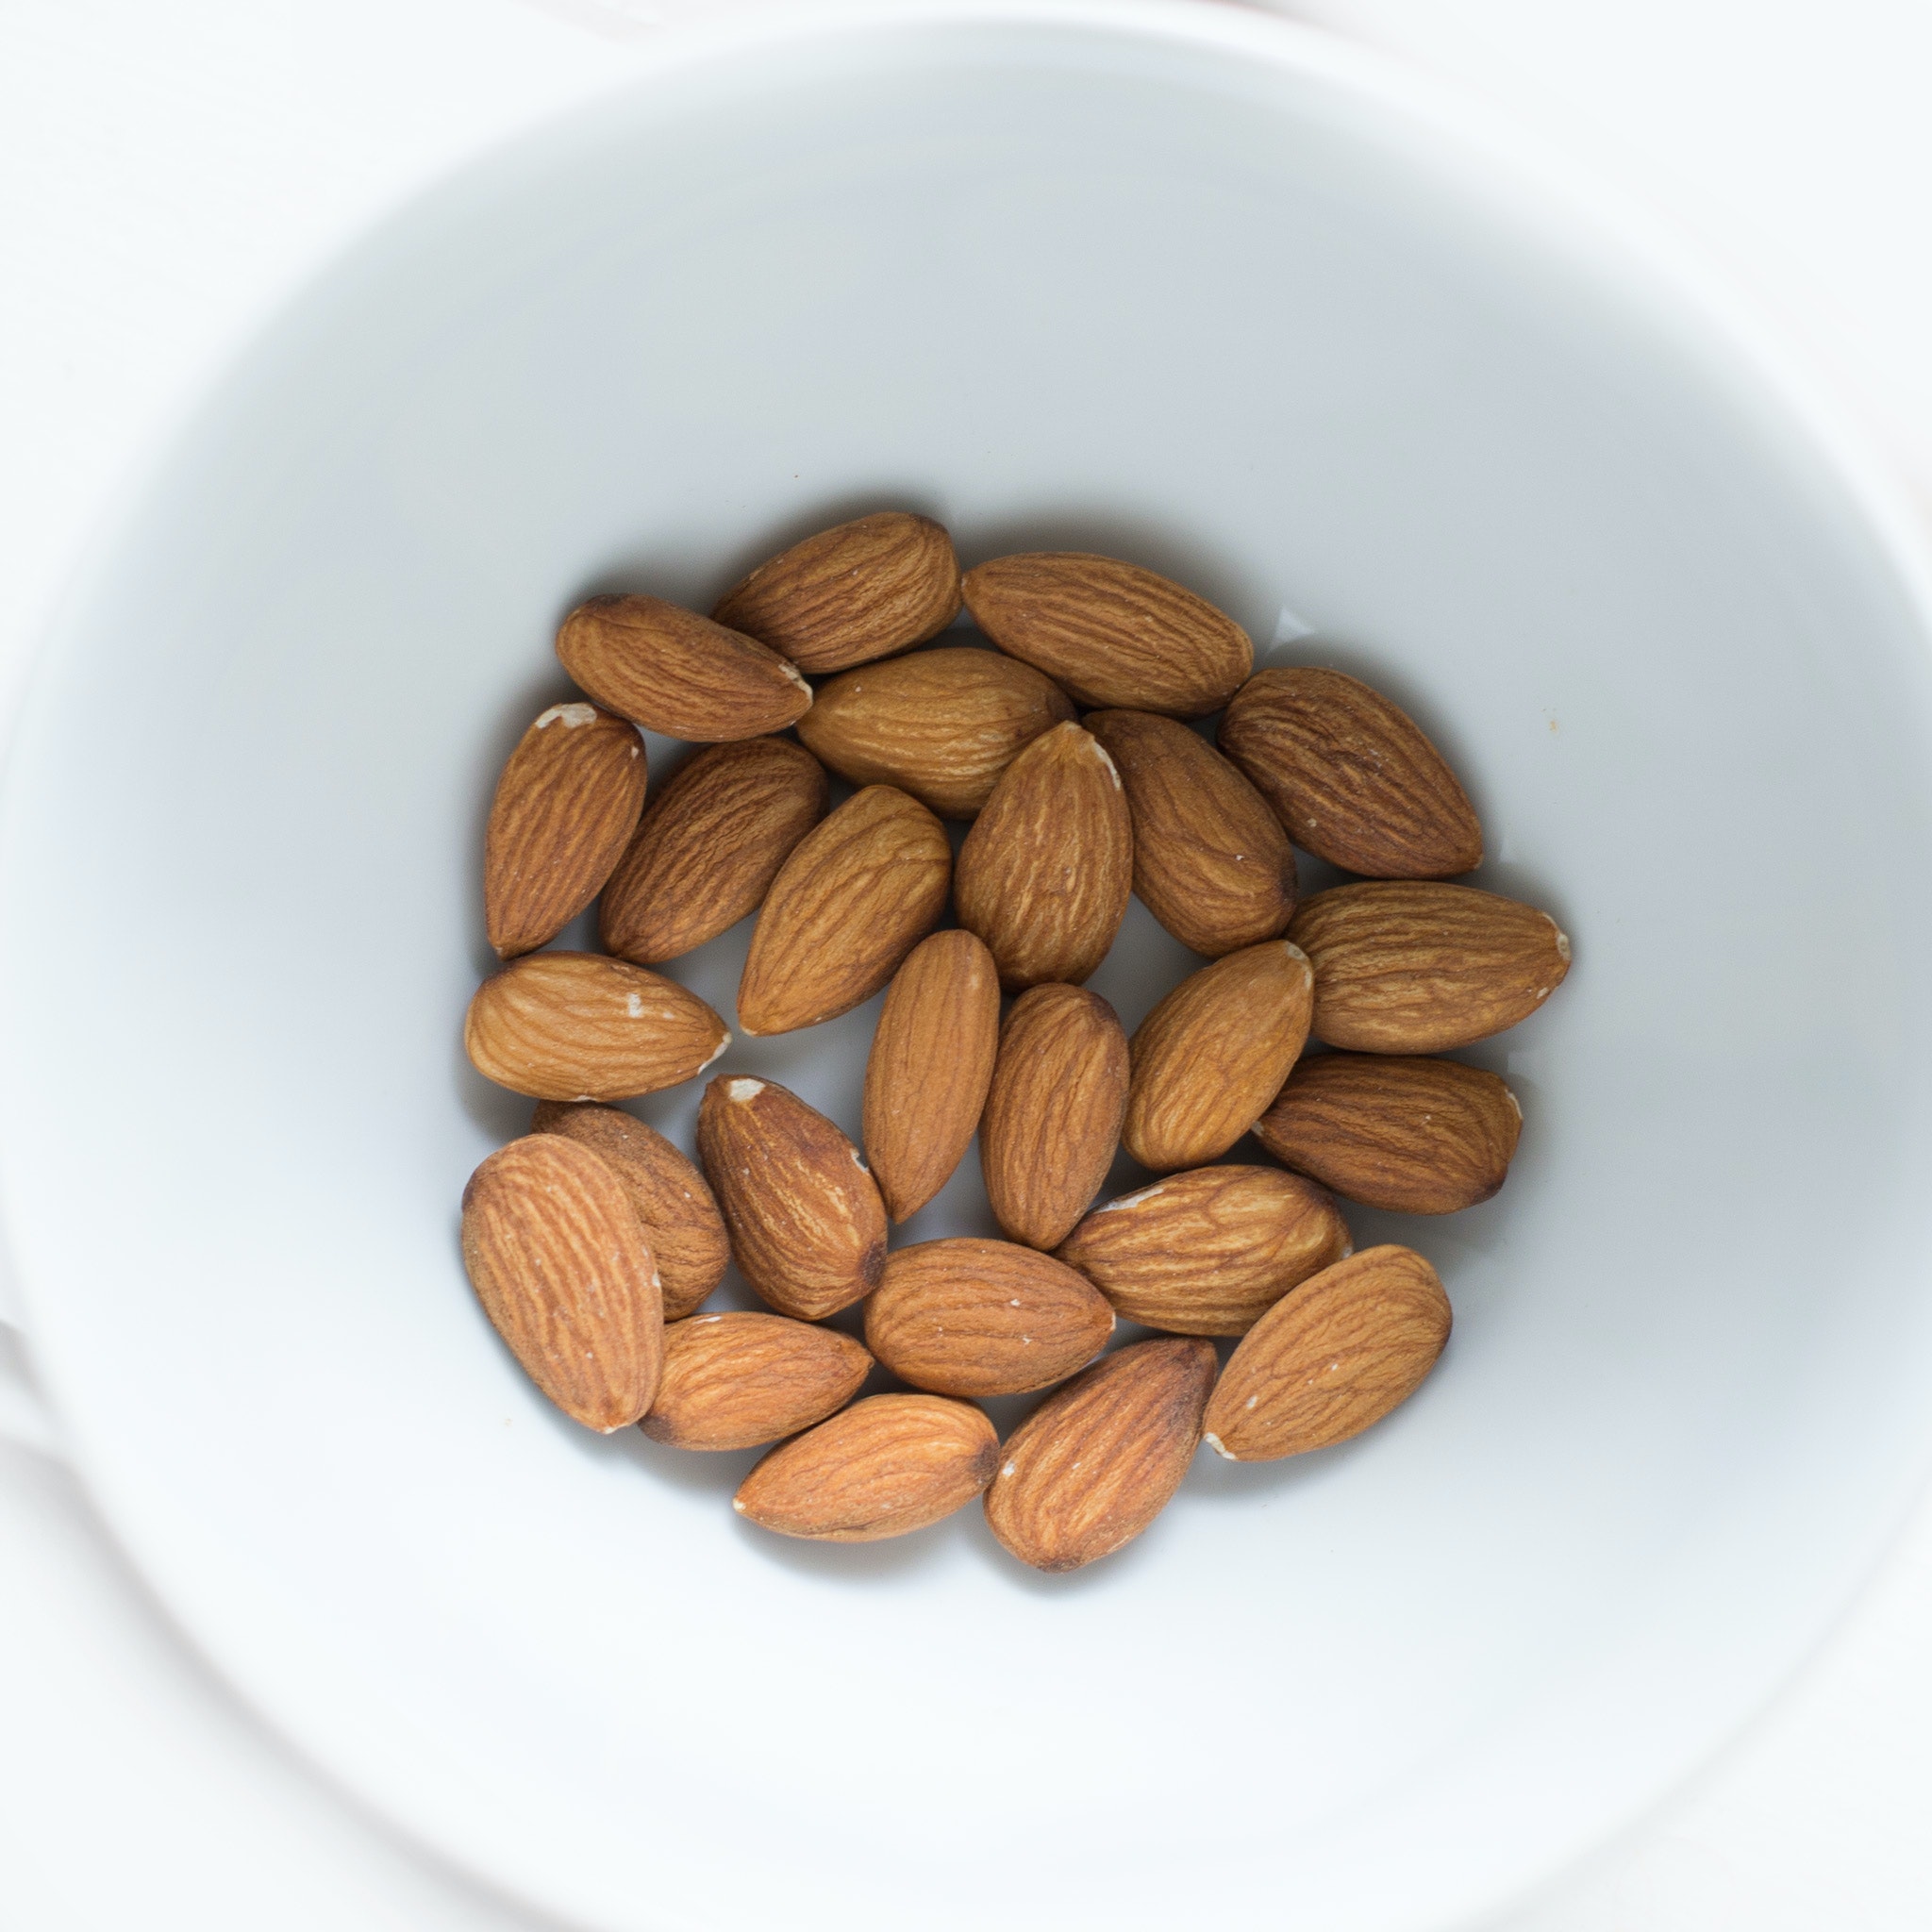 almond-paleo-diet-nuts